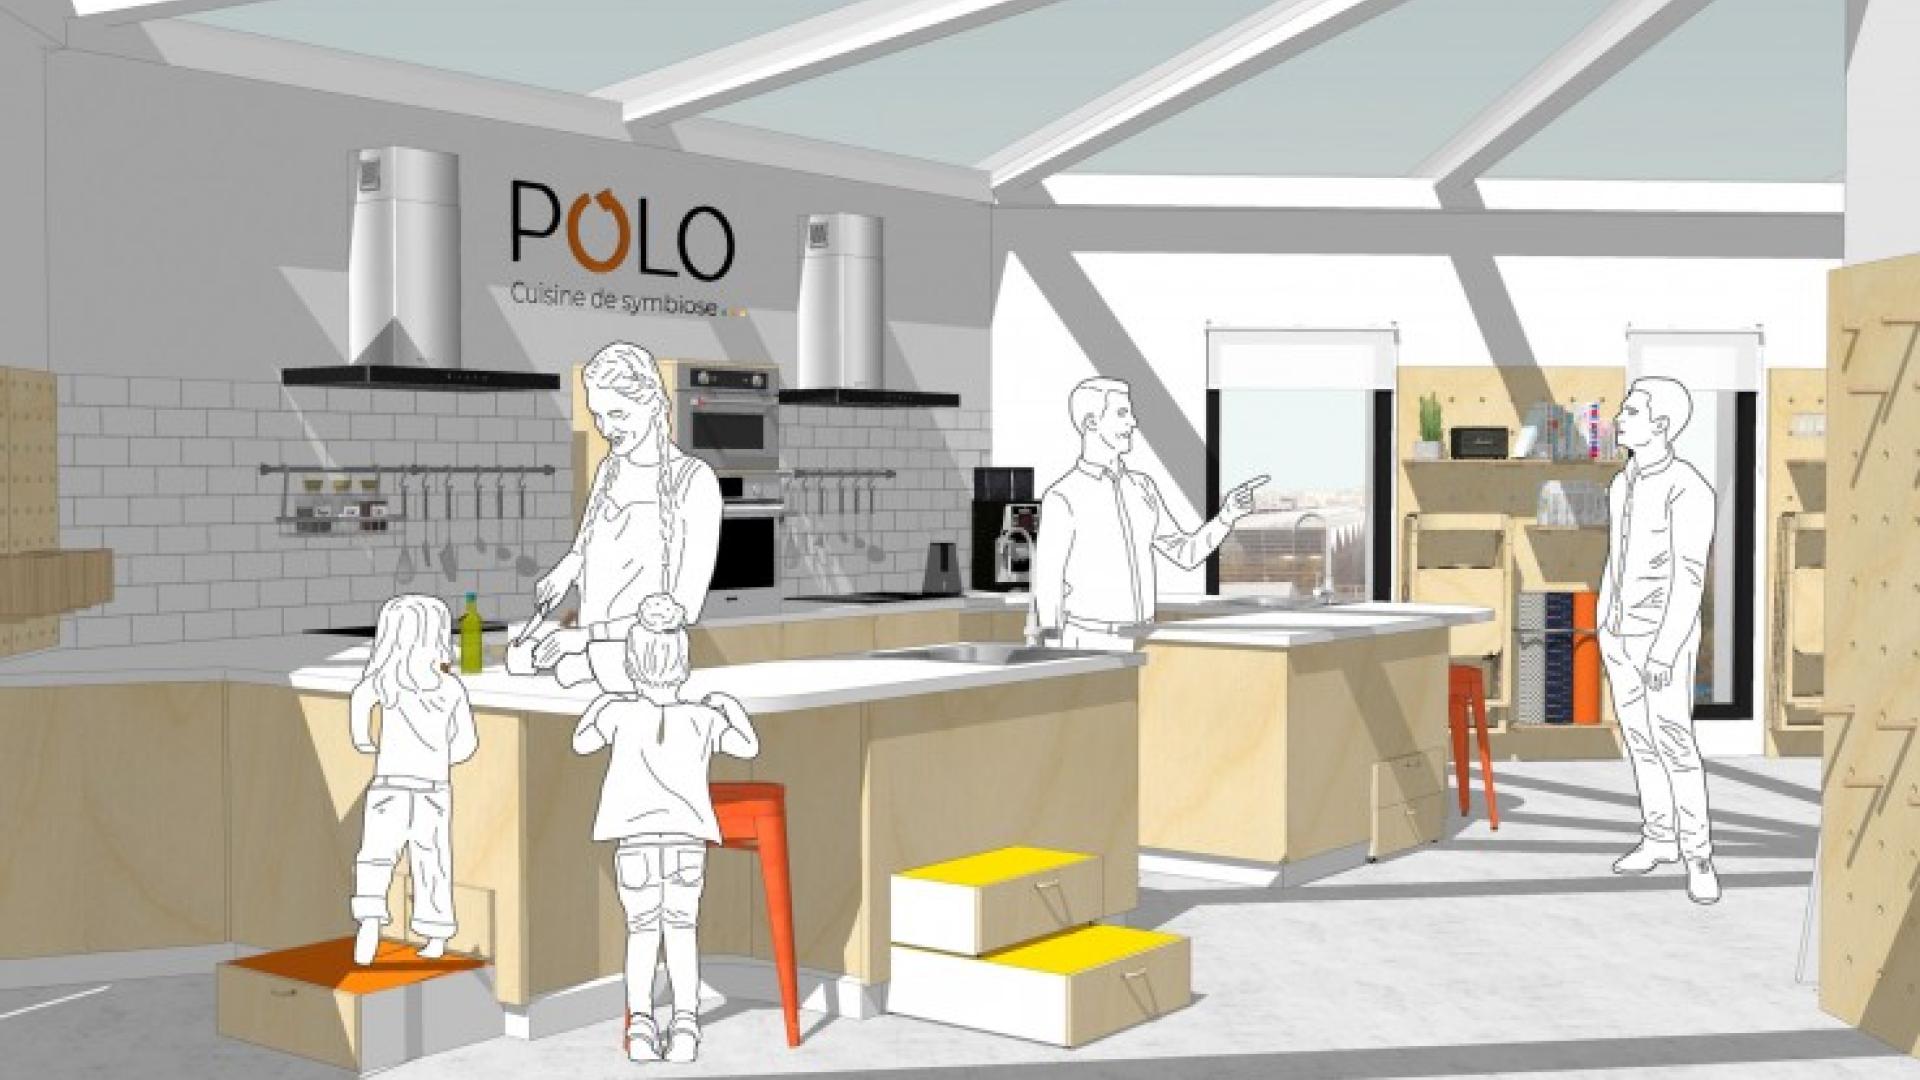 Polo / Cuisine partagée : un espace d’échange et de transmission des savoirs / Projet bachelor